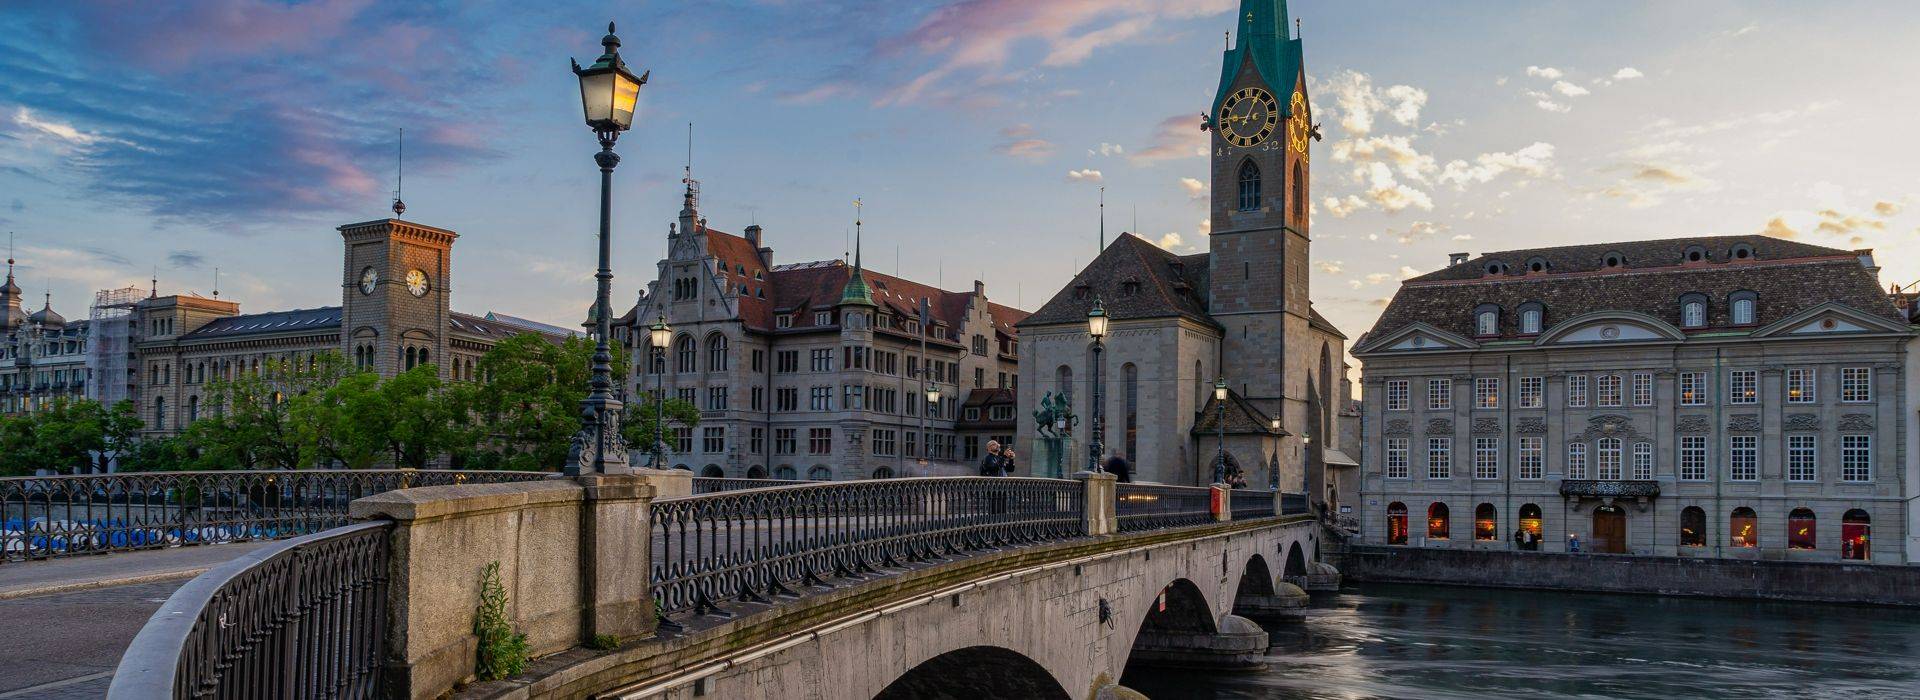 Switzerland-Zurich-Jörg Vieli-Pixabay.jpg